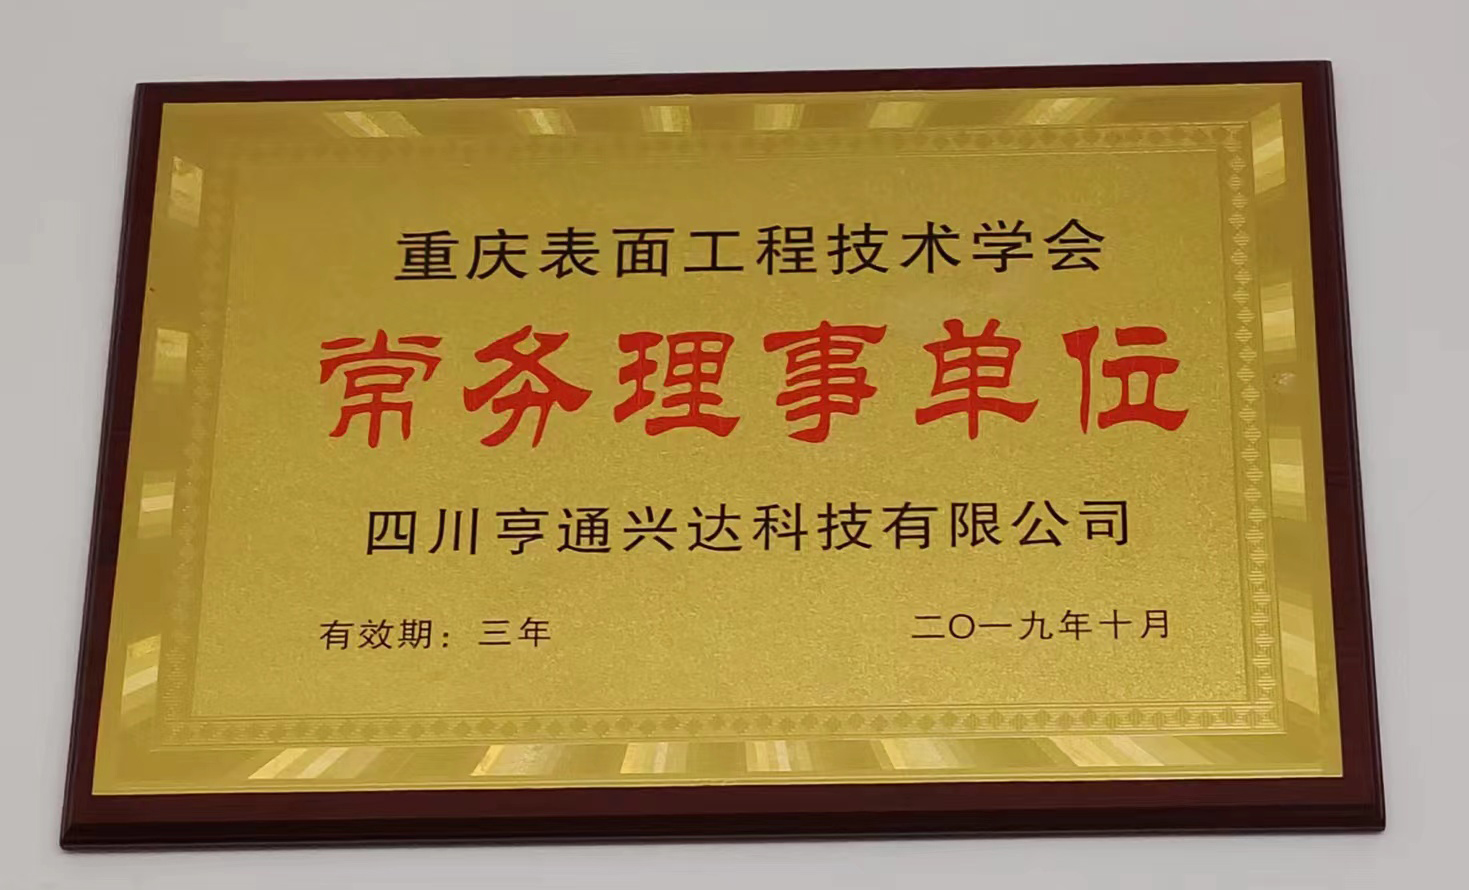 重庆表面工程技术学会2019常务理事单位